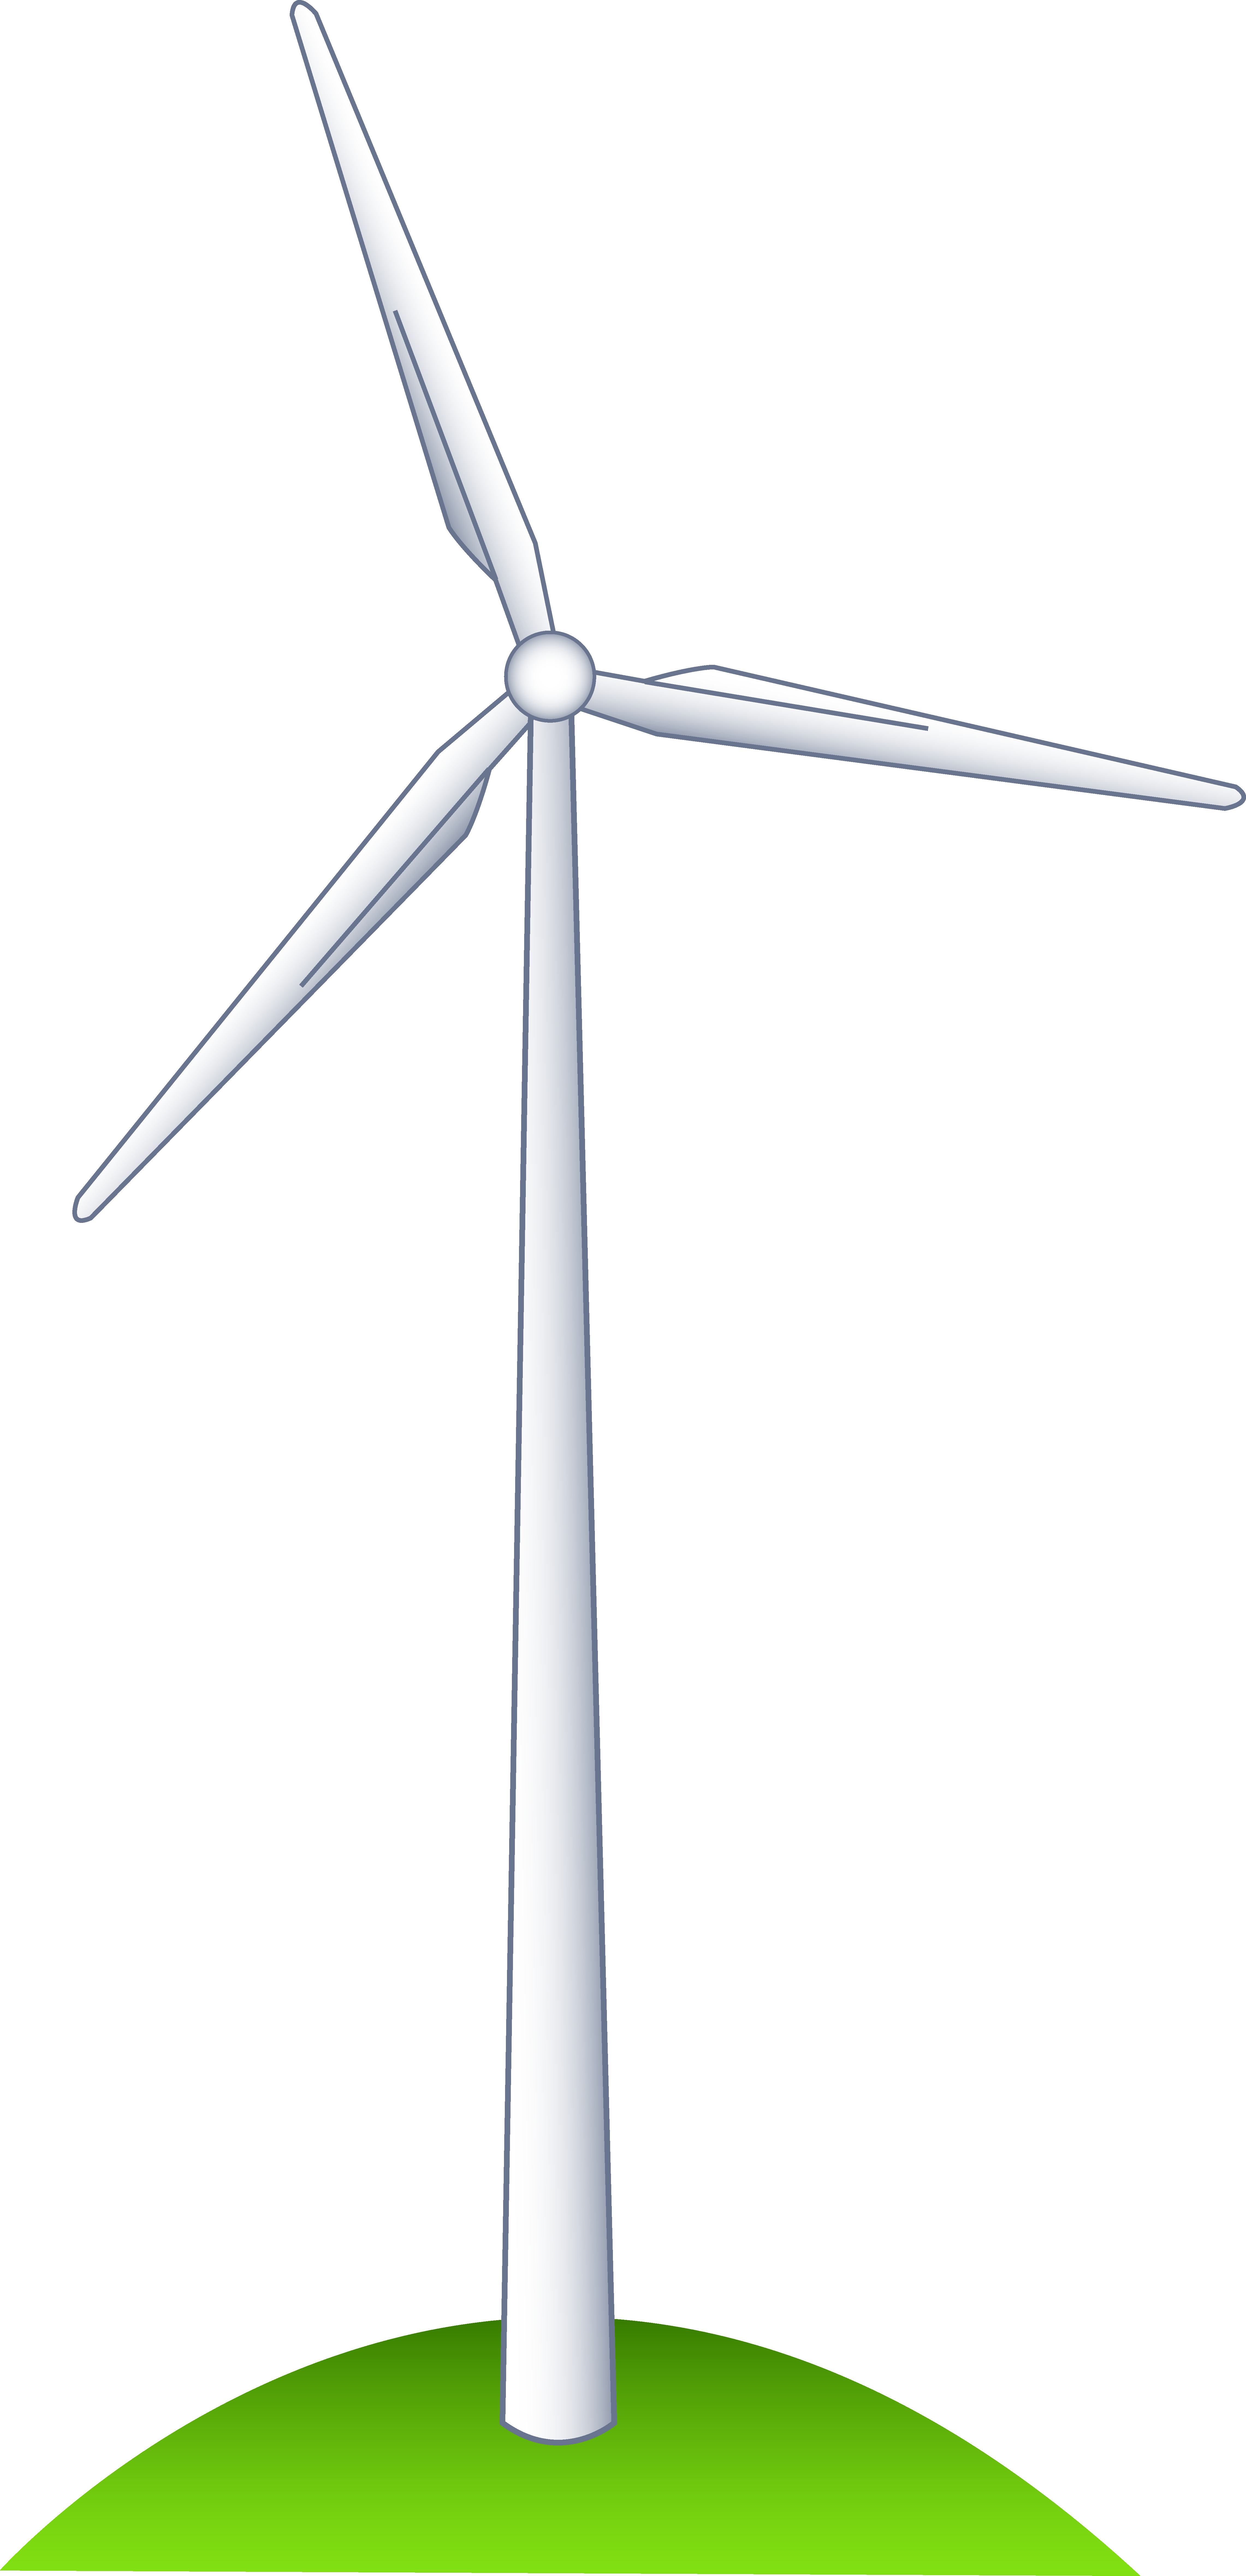 A Wind Turbine on a Hill - Windmill Clipart